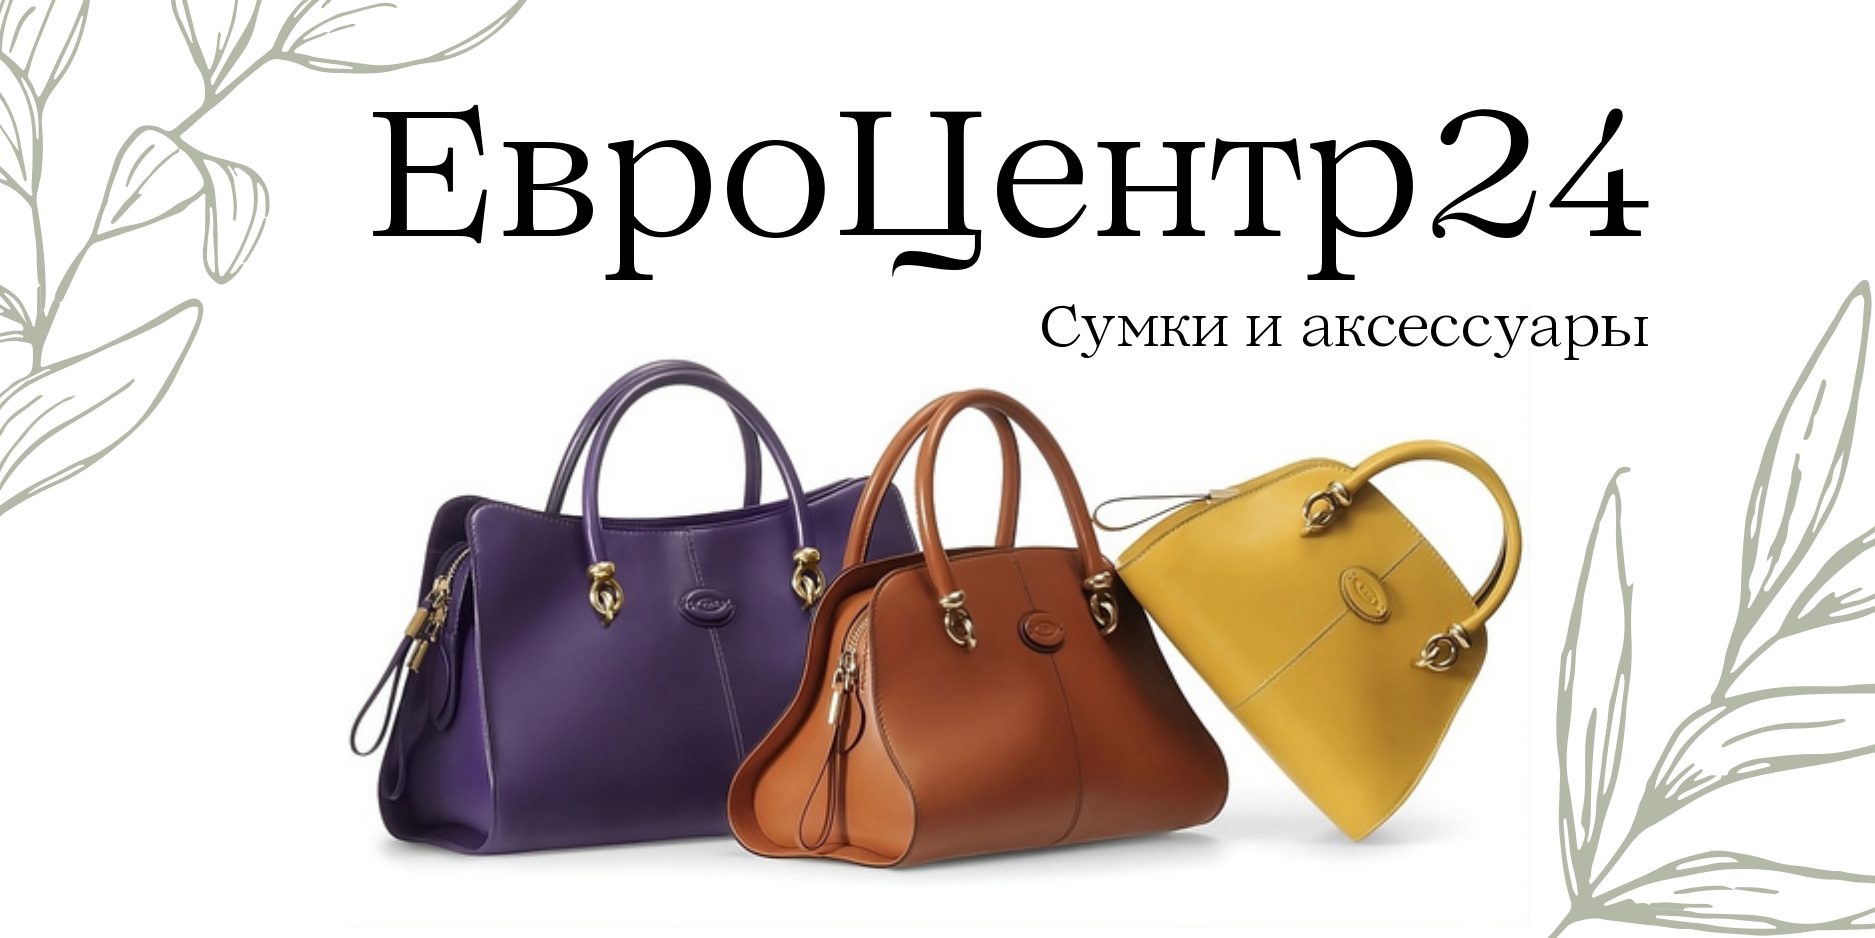 Магазин сумок и аксессуаров "ЕвроЦентр24"